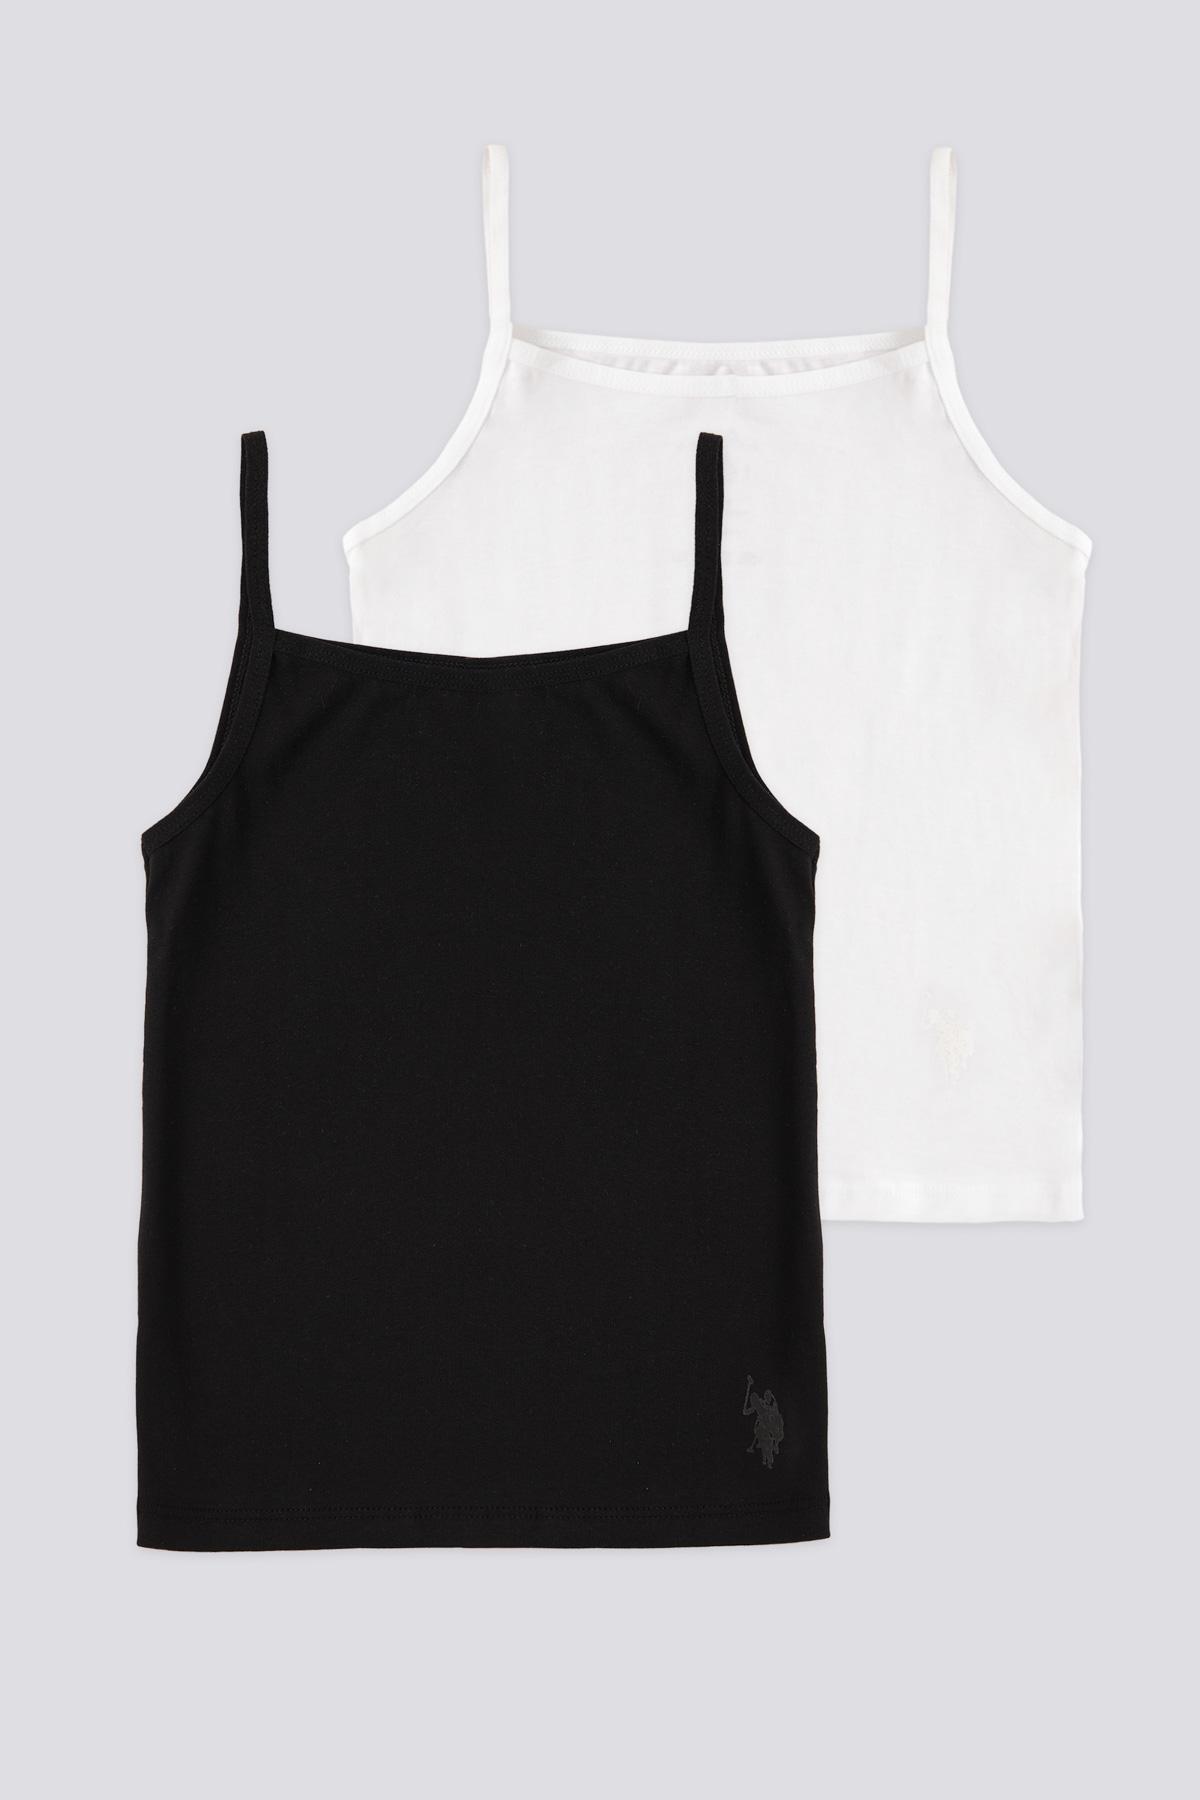 Selected image for U.S. Polo Assn. Set majica za devojčice US1672, 2 komada, Crna i bela